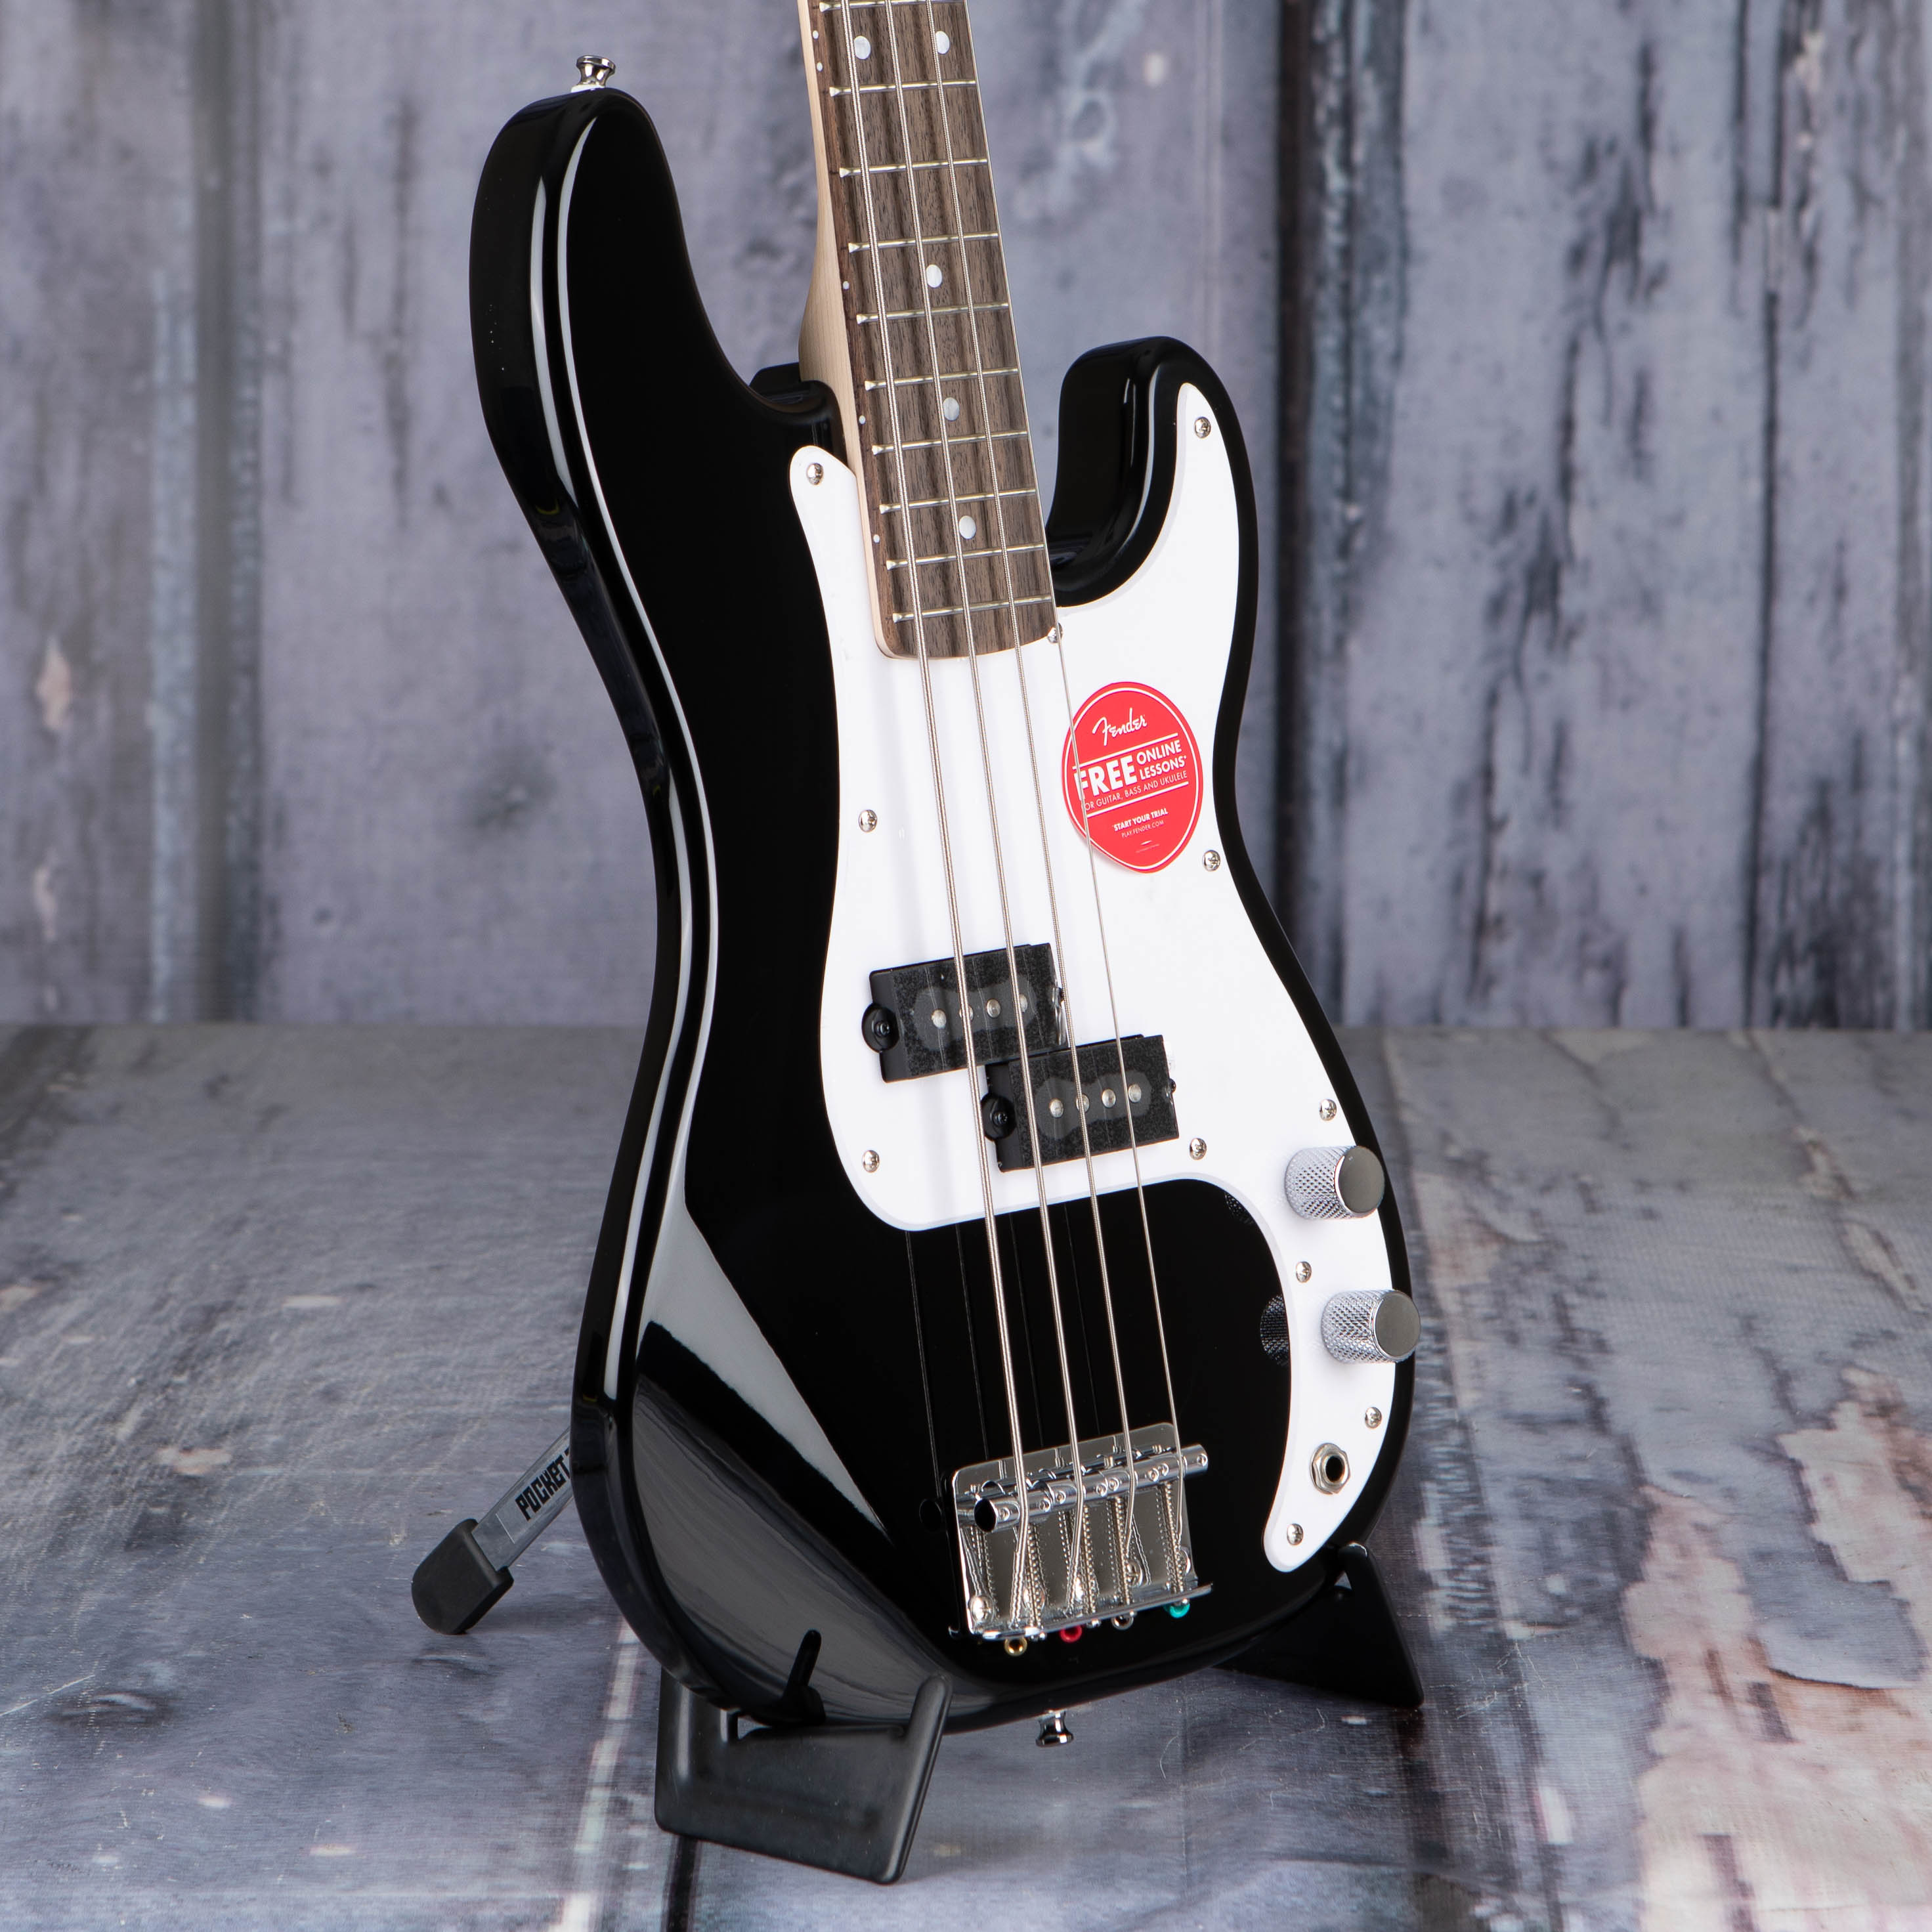 Squier Mini Precision Bass Guitar, Black, angle